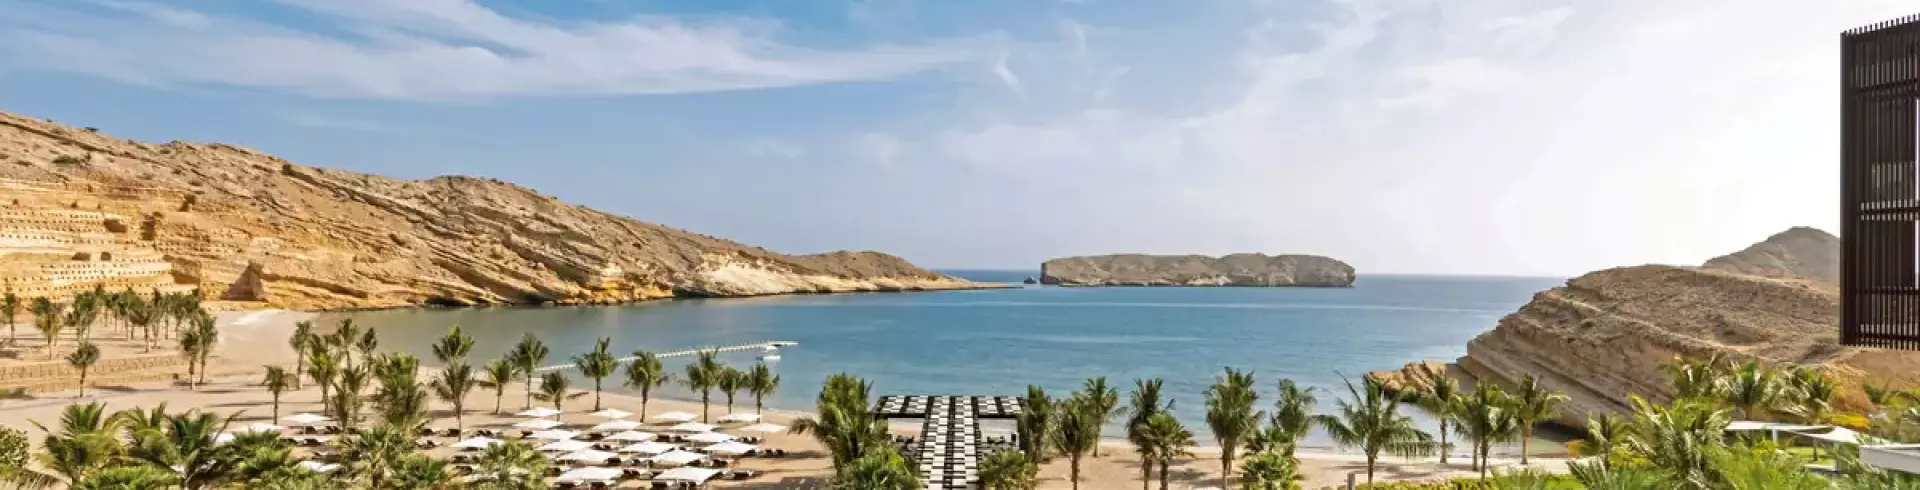 Jumeirah Muscat Bay